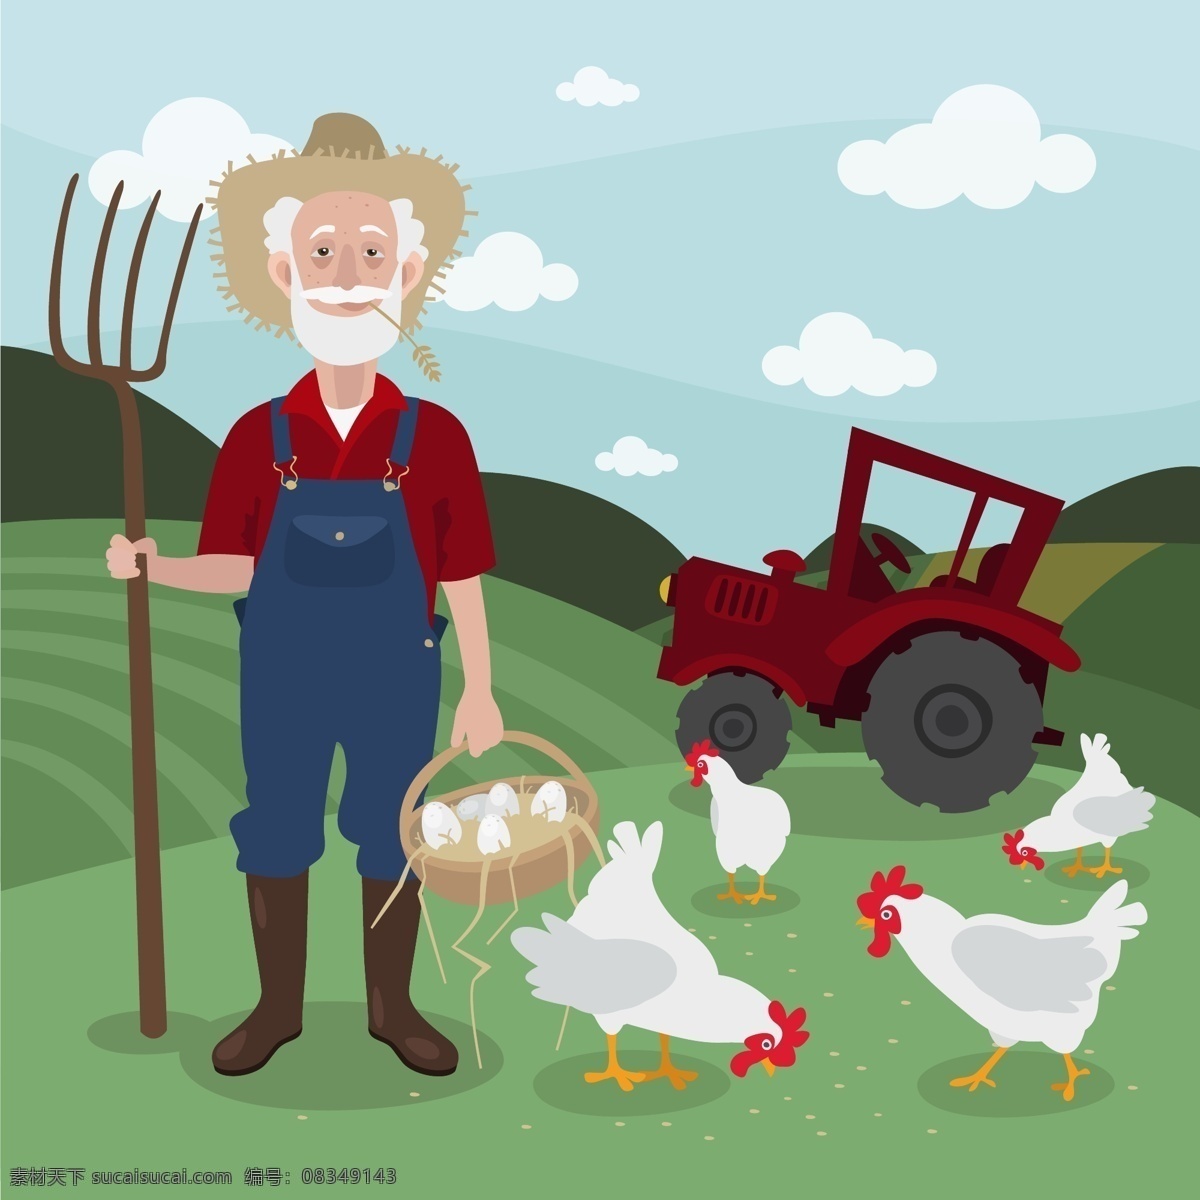 卡通 白 胡子 农夫 矢量 云朵 田地 农场 拖拉机 鸡 鸡蛋 饲料 动漫动画 风景漫画